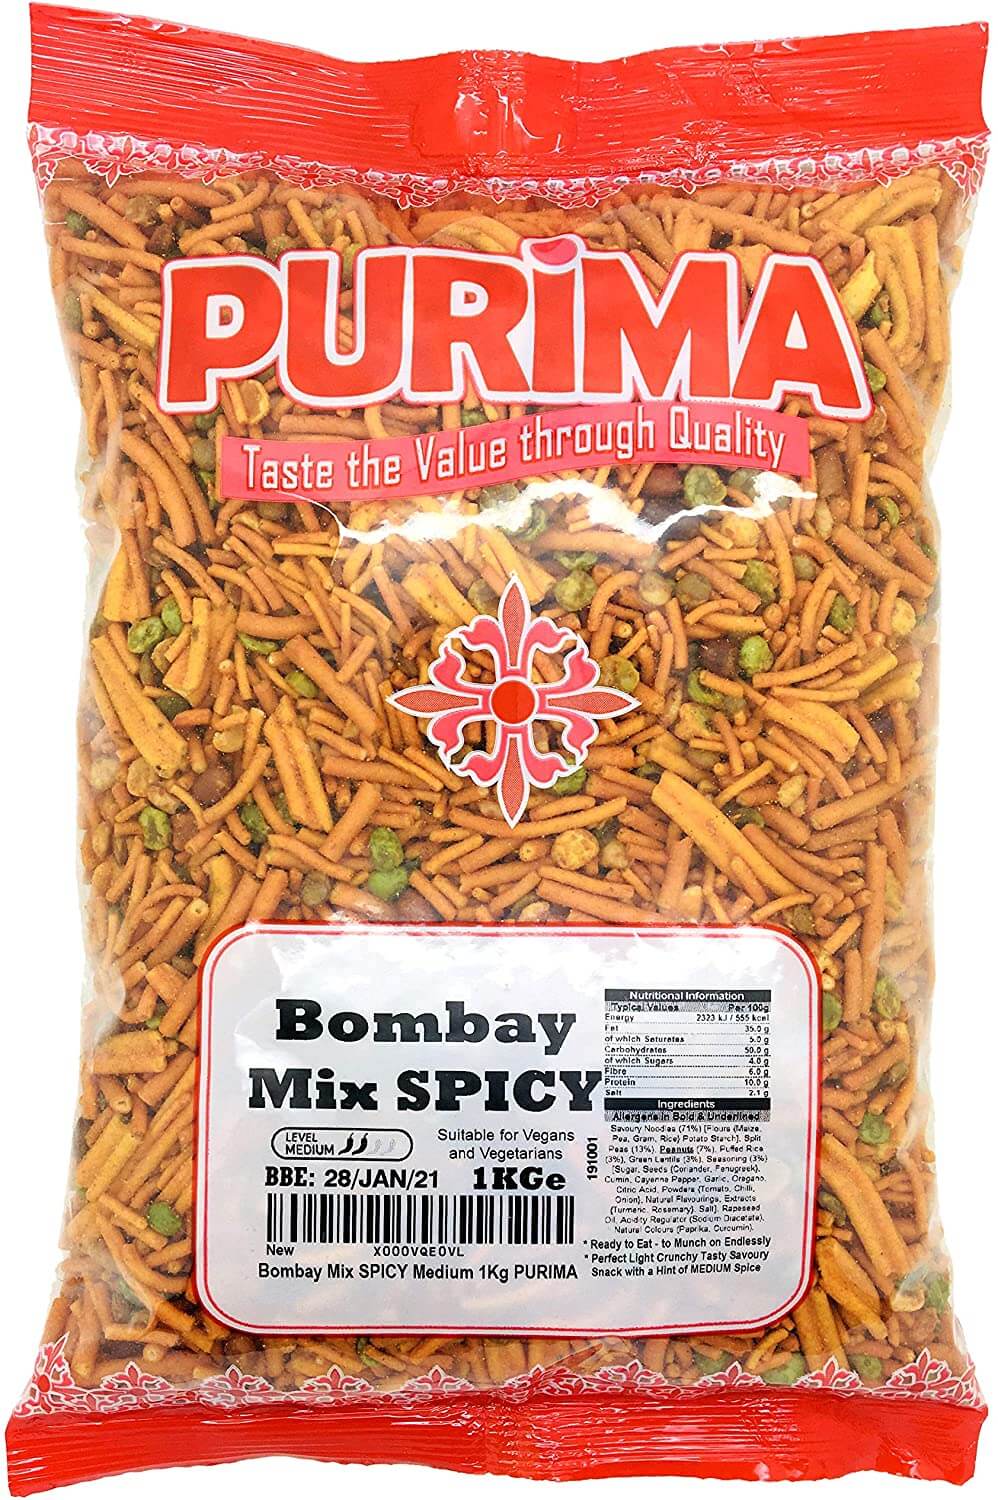 Bombay Mix Spicy purima